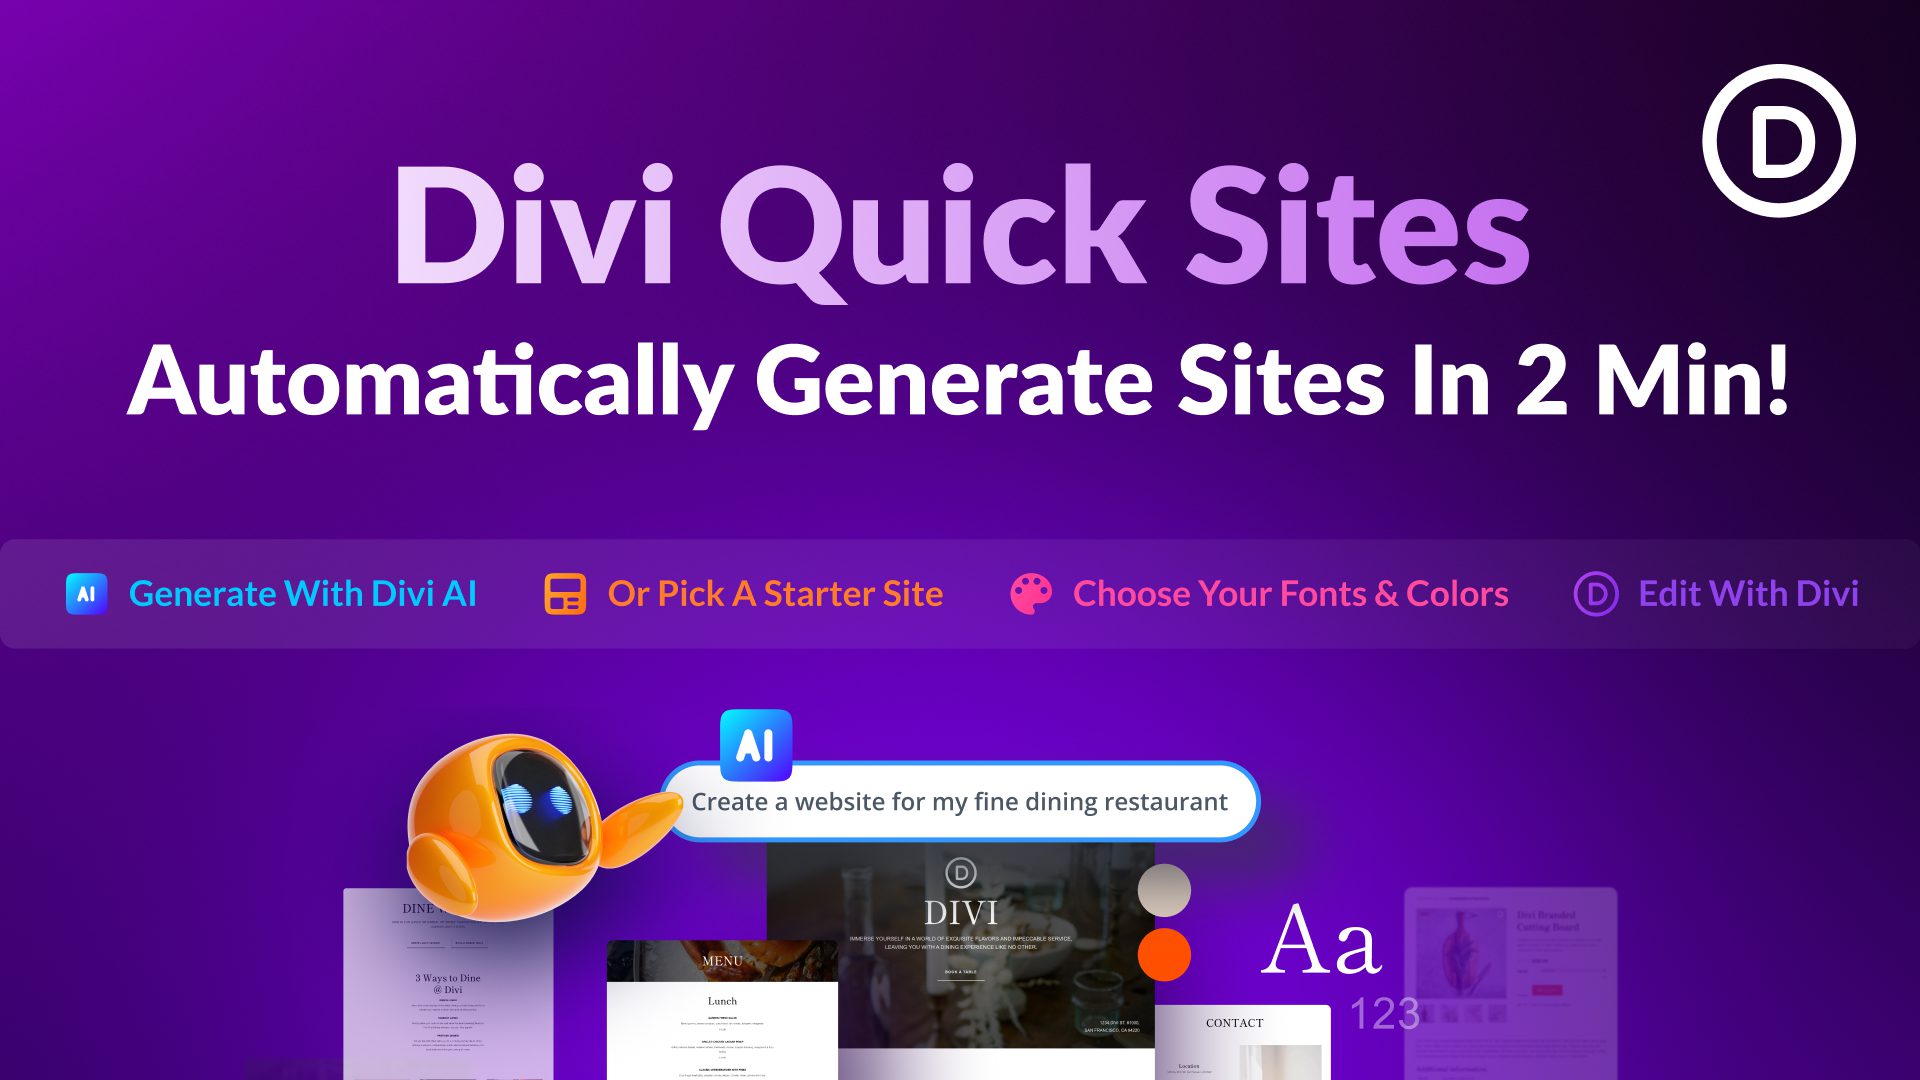 Introducing Divi Quick Sites & AI Website Creation